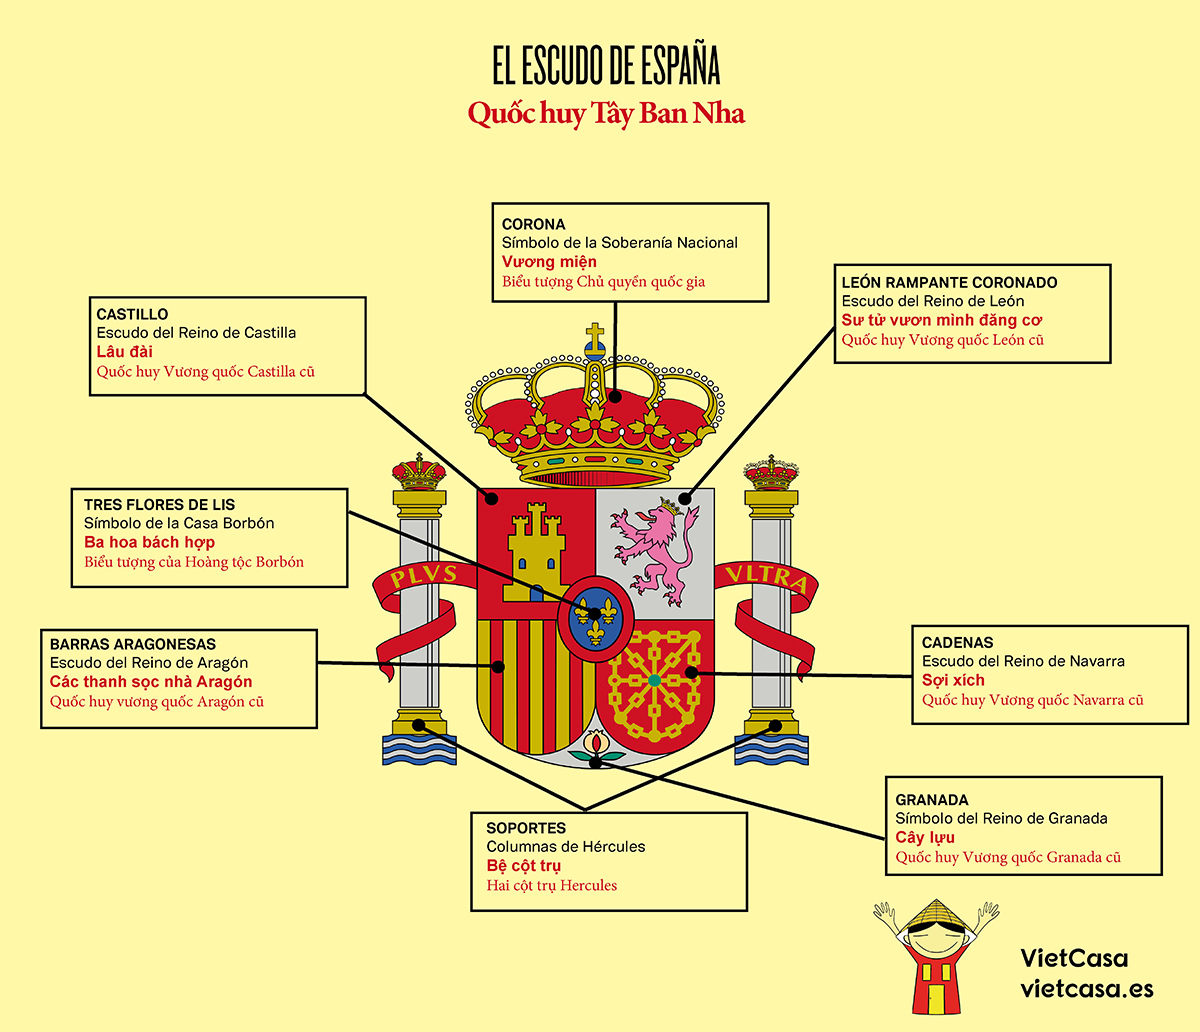 Quốc huy Tây Ban Nha: Quốc huy Tây Ban Nha là biểu tượng của sự kiêu hãnh và quyền uy của quốc gia này. Bản chất của quốc huy thể hiện tinh thần thịnh vượng, sự thống nhất và tự hào của người dân Tây Ban Nha. Hình ảnh này sẽ mang lại một cảm giác vững chắc và chuyên nghiệp cho mọi thiết kế.